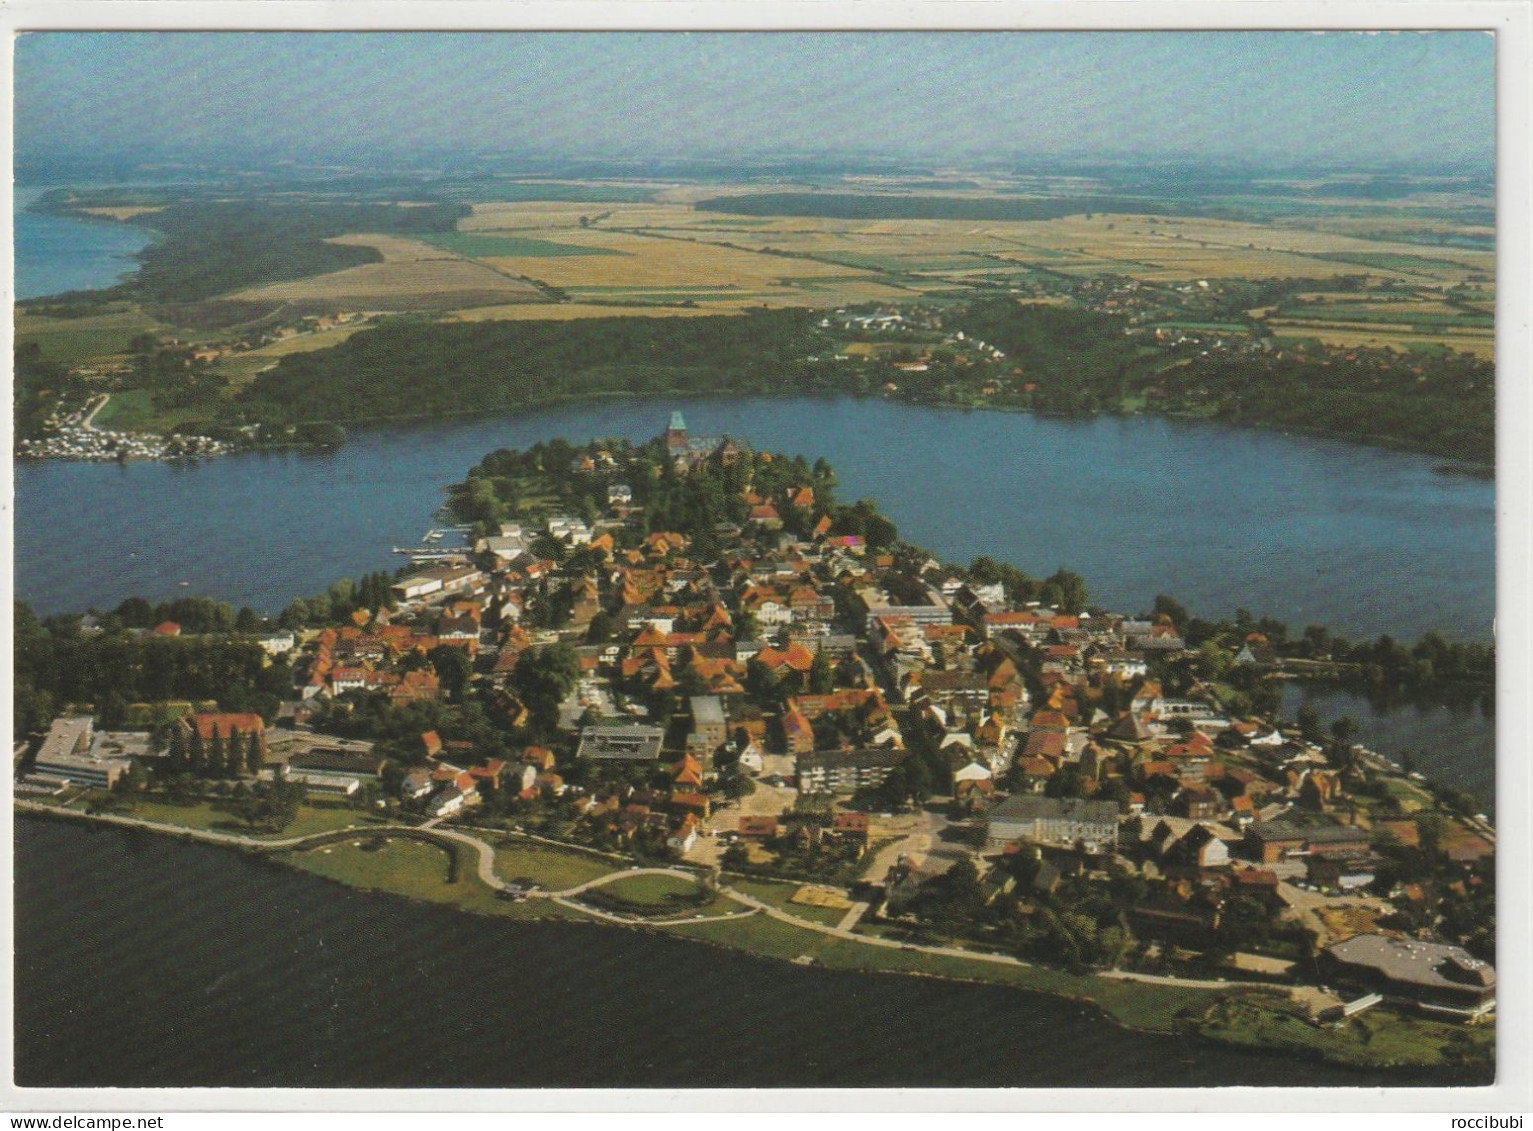 Ratzeburg, Schleswig-Holstein - Ratzeburg